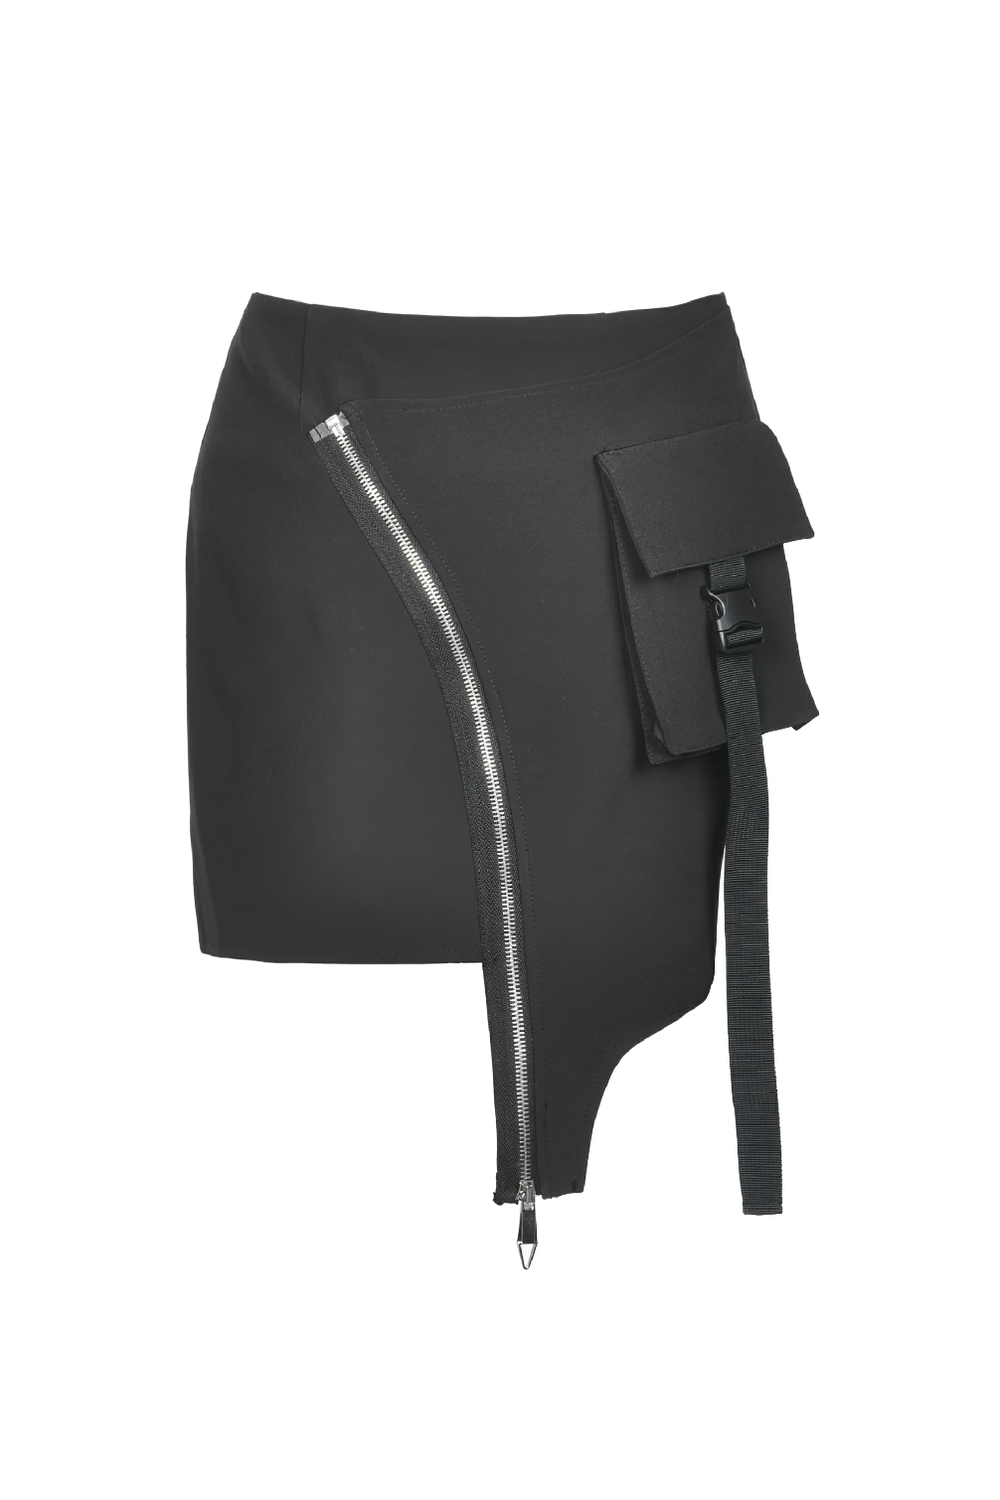 Sleek Black Skirt with Zipper and Belt Detailing